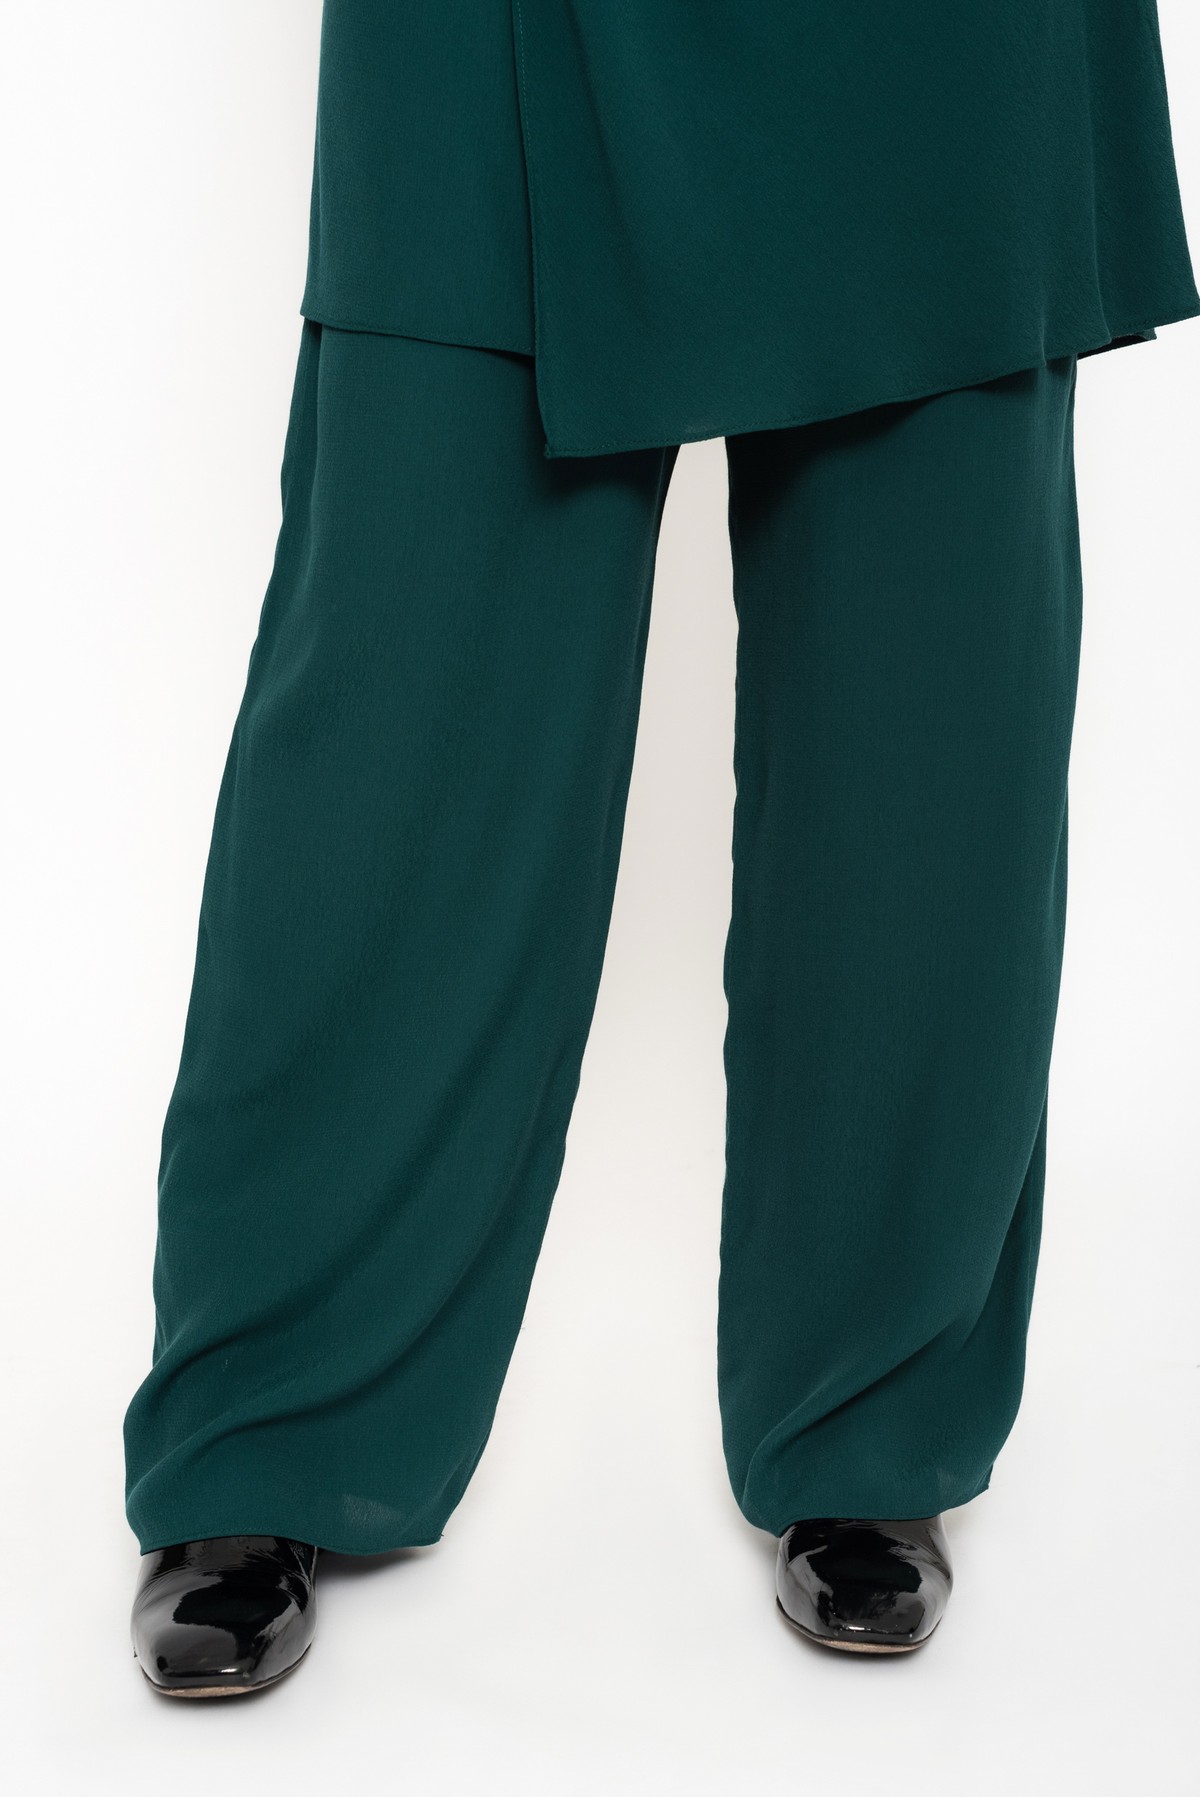 conjunto de vestido túnica duplo | tunic and pants set